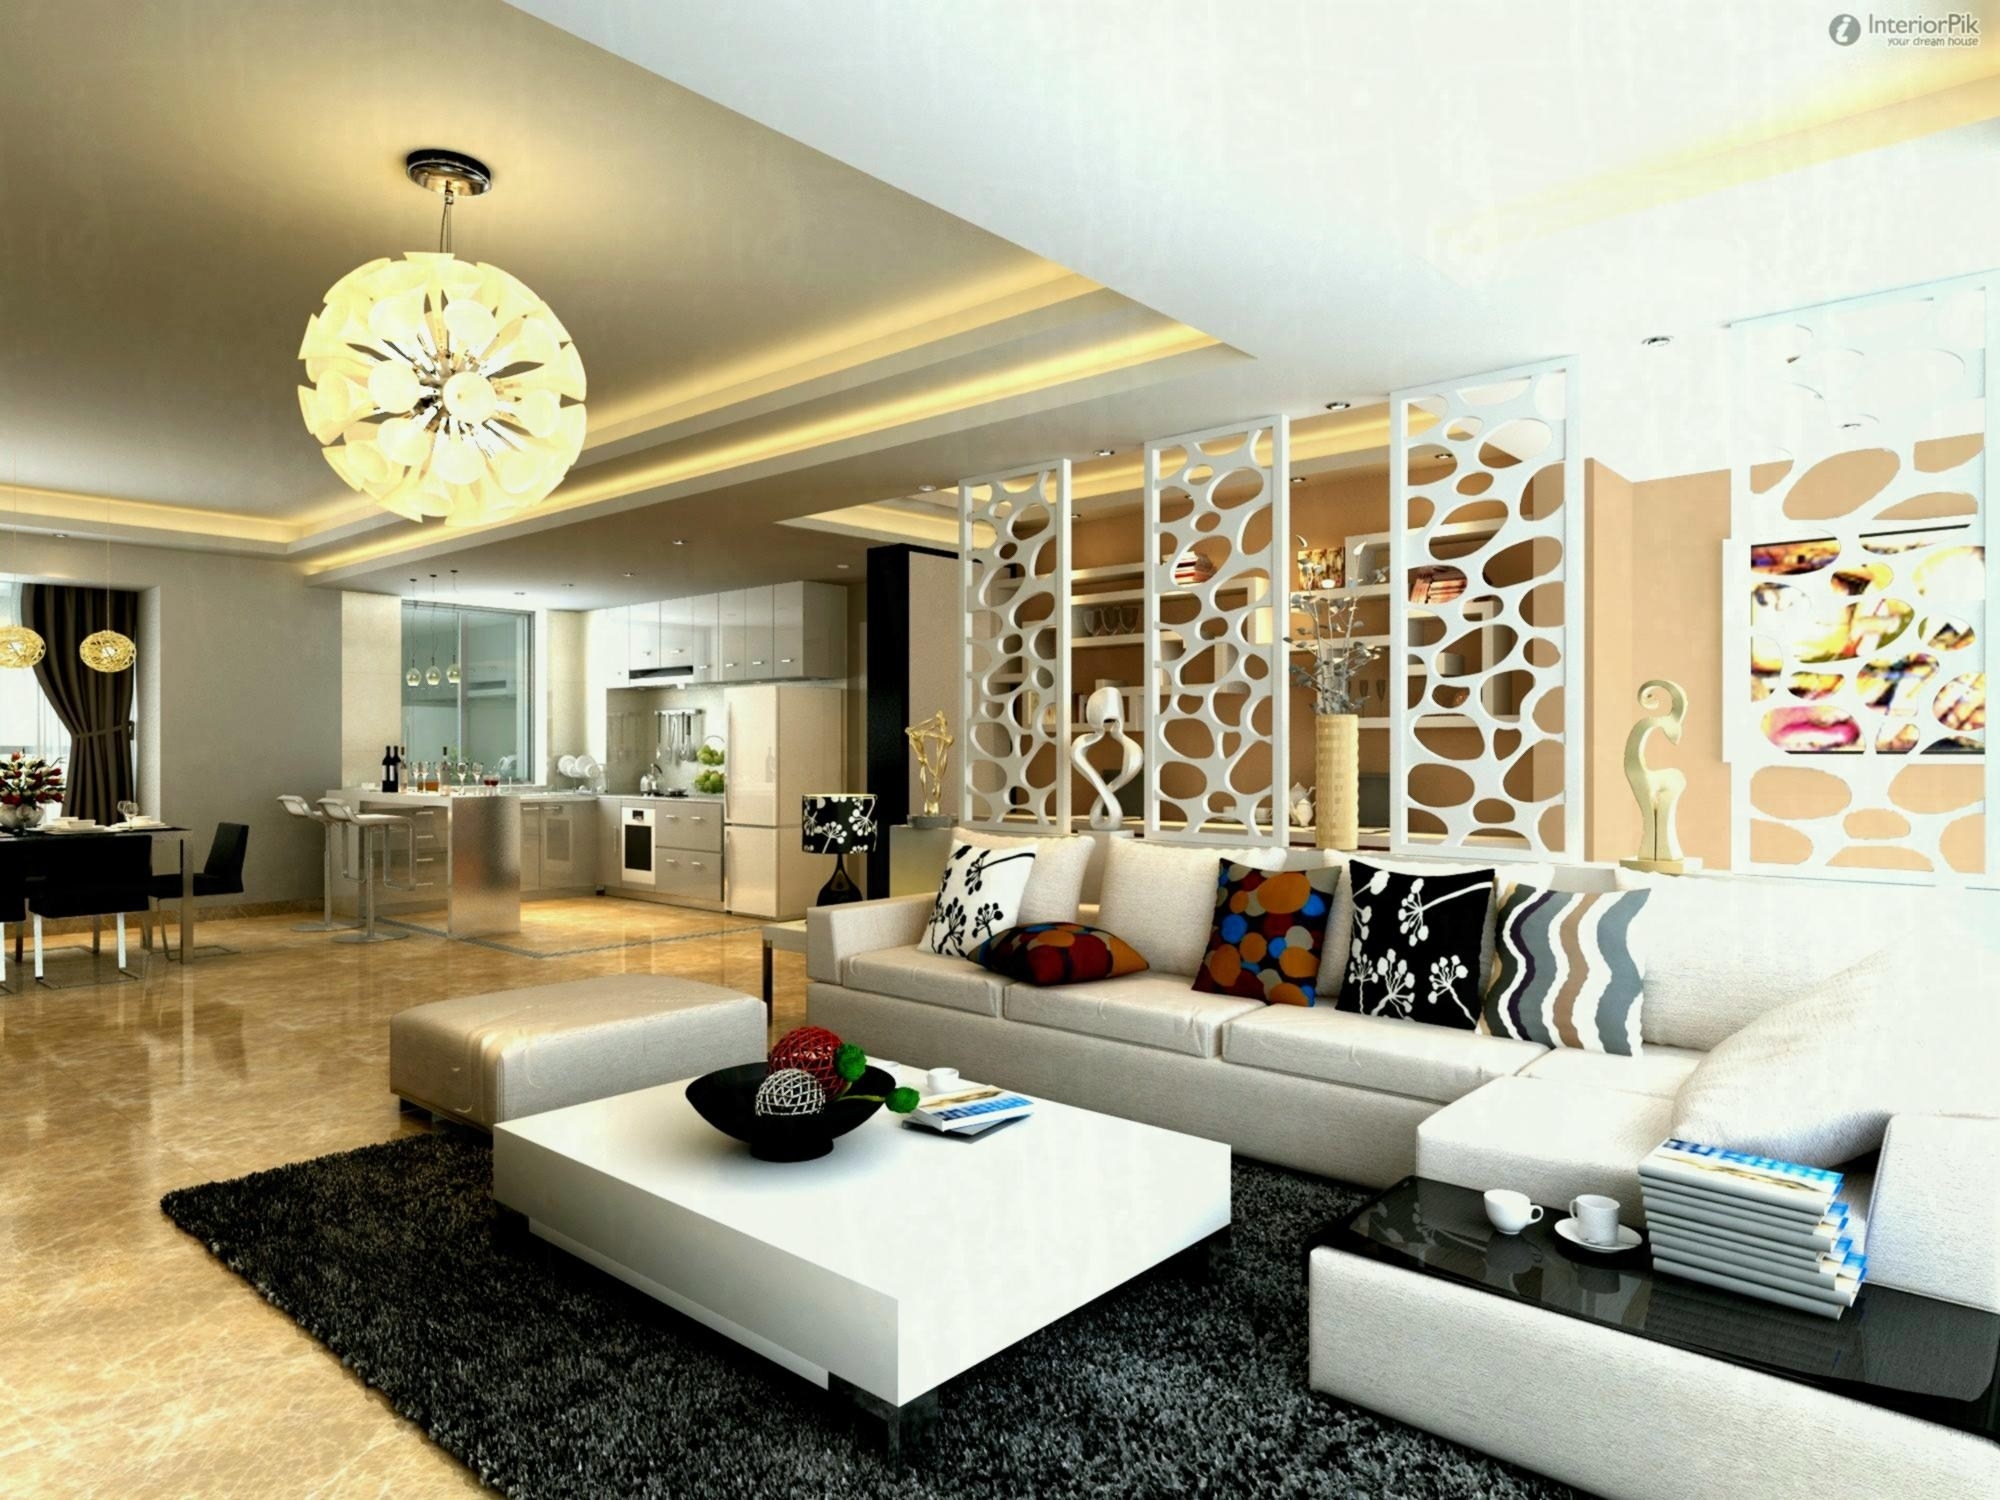 Inspirational Interior Home Decor Ideas